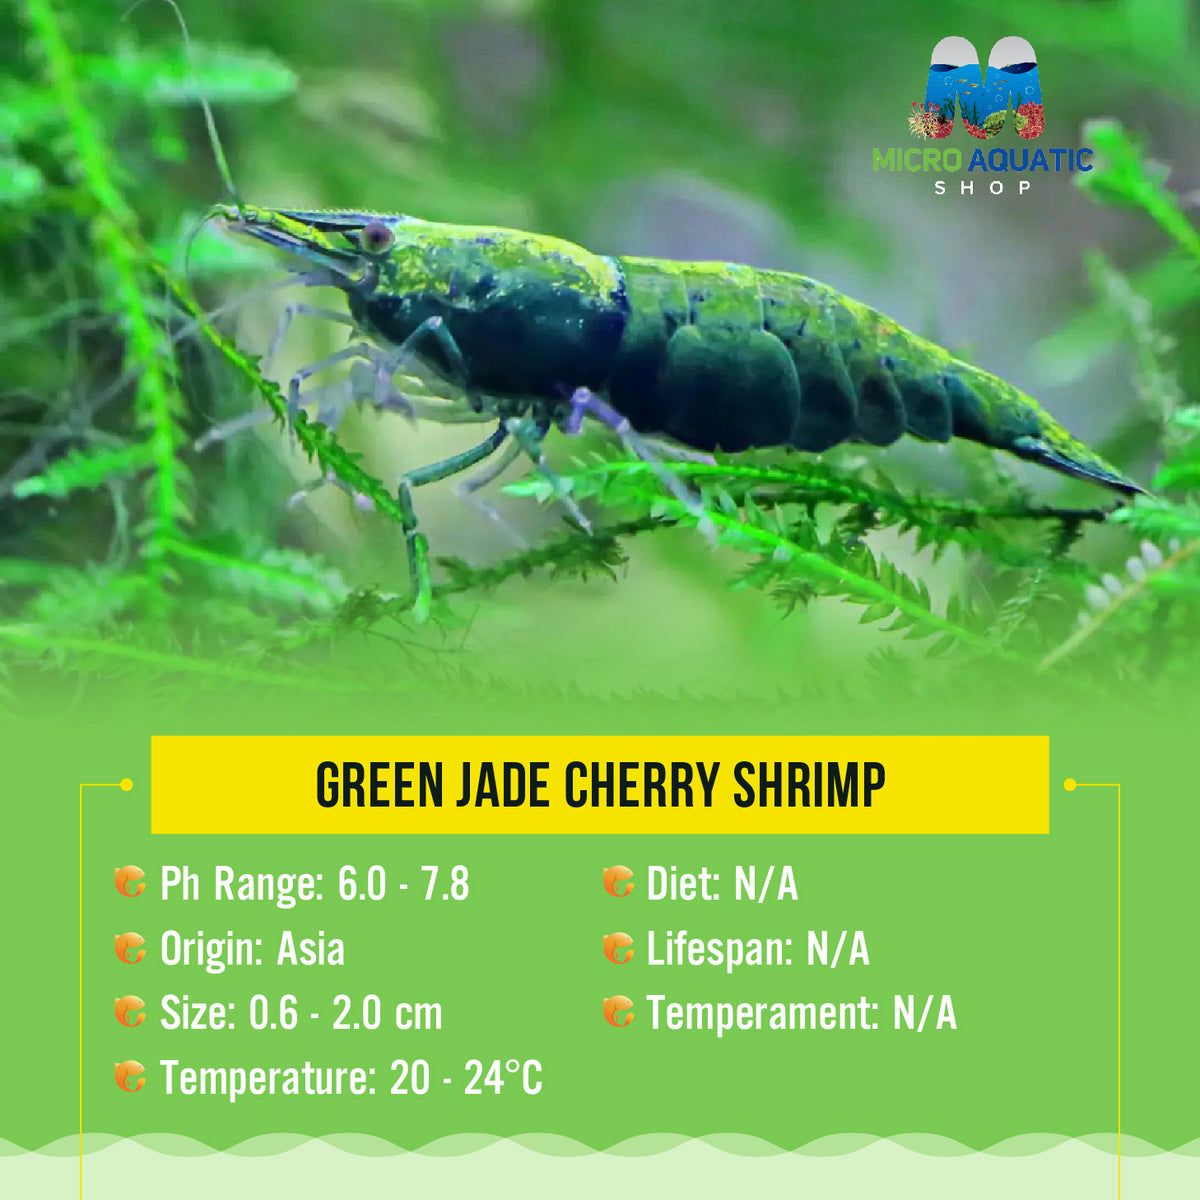 Buy 10 get 5 Green Jade Cherry Shrimp